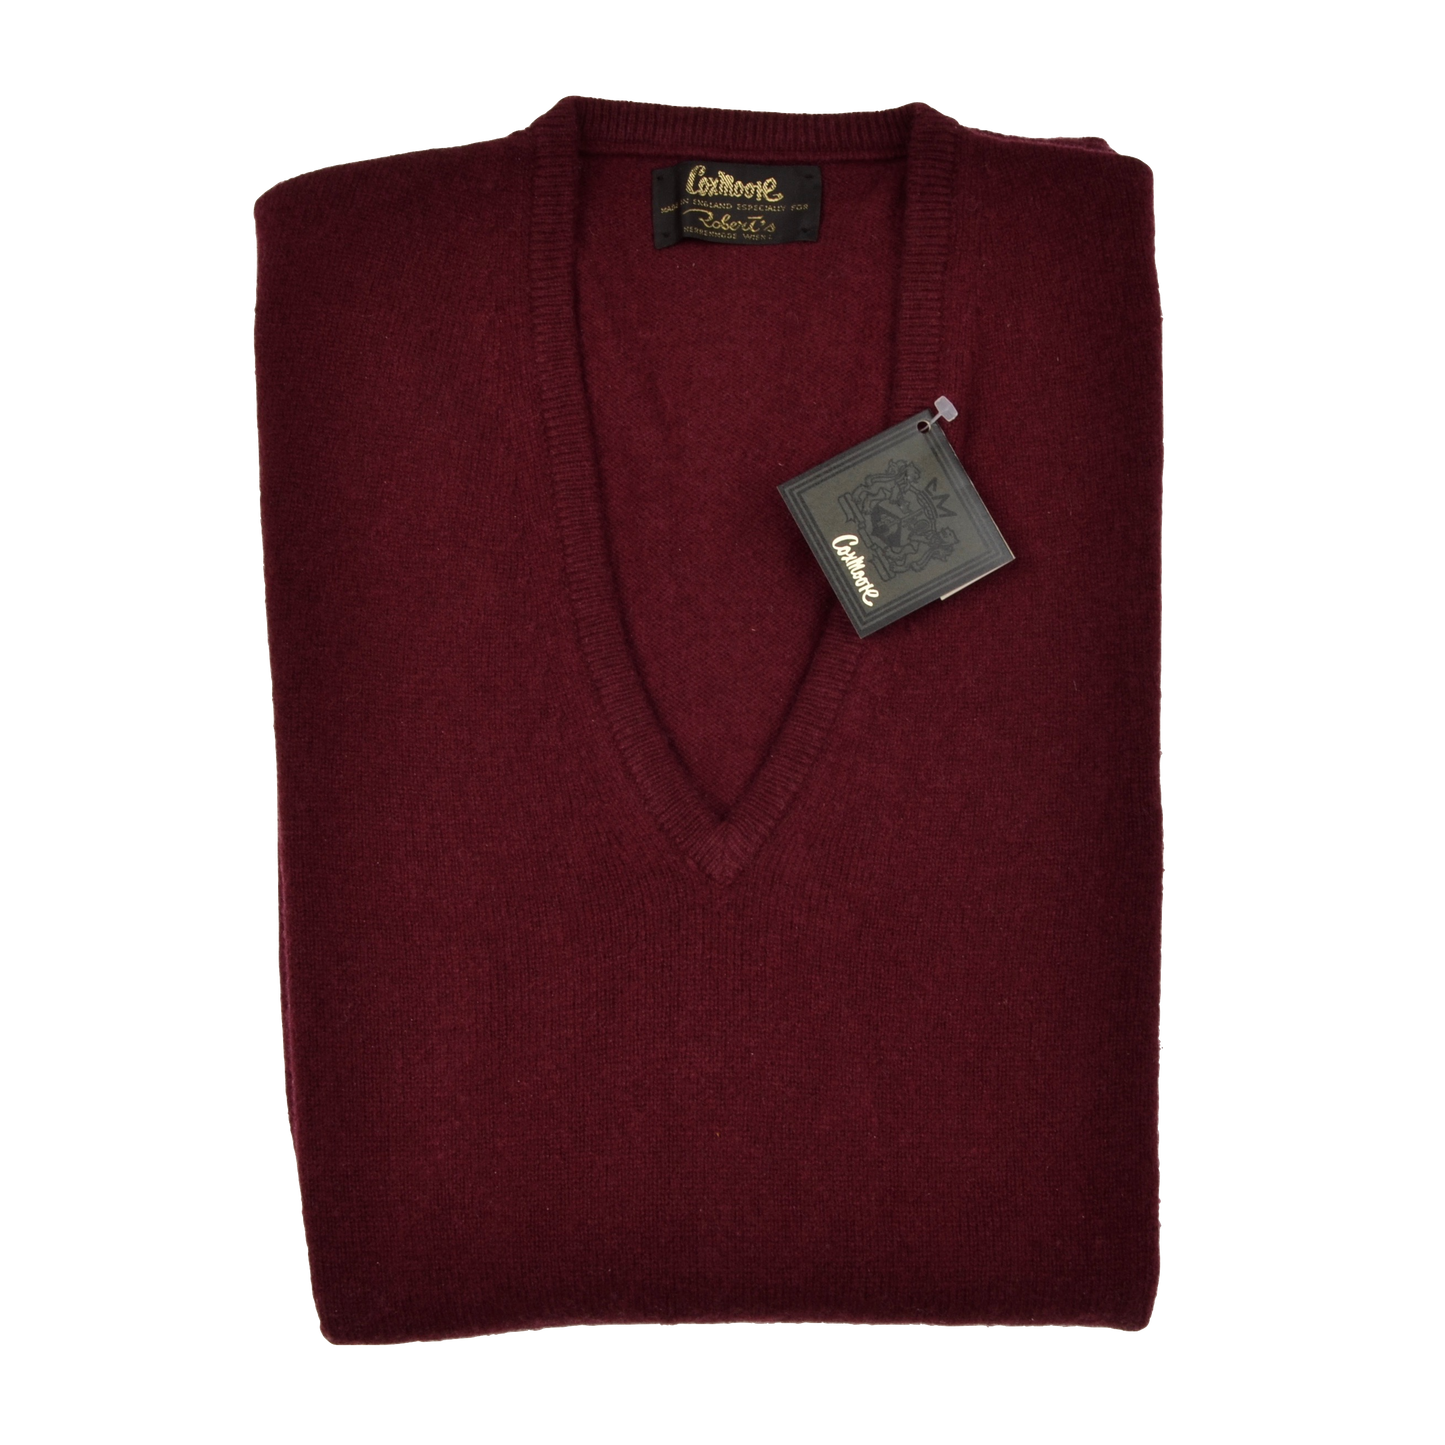 Coxmoore of England Sweater Vest Size XL  - Bordeaux